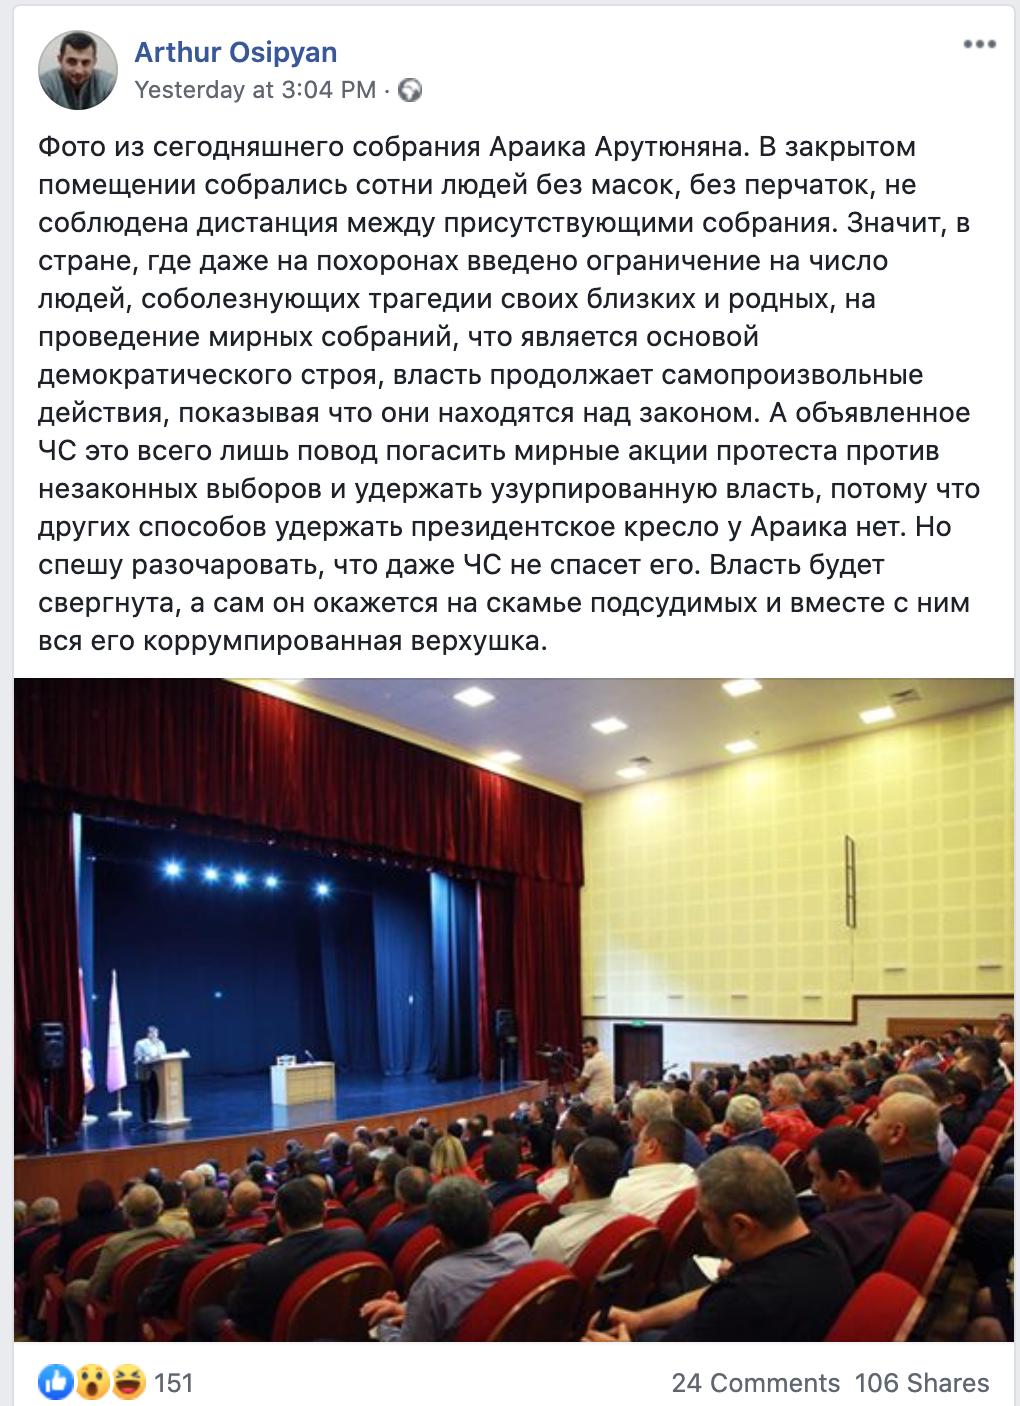 Скриншот поста на странице Артура Осипяна в Facebook. https://www.facebook.com/arthur.osipyan.902/posts/560709661512757